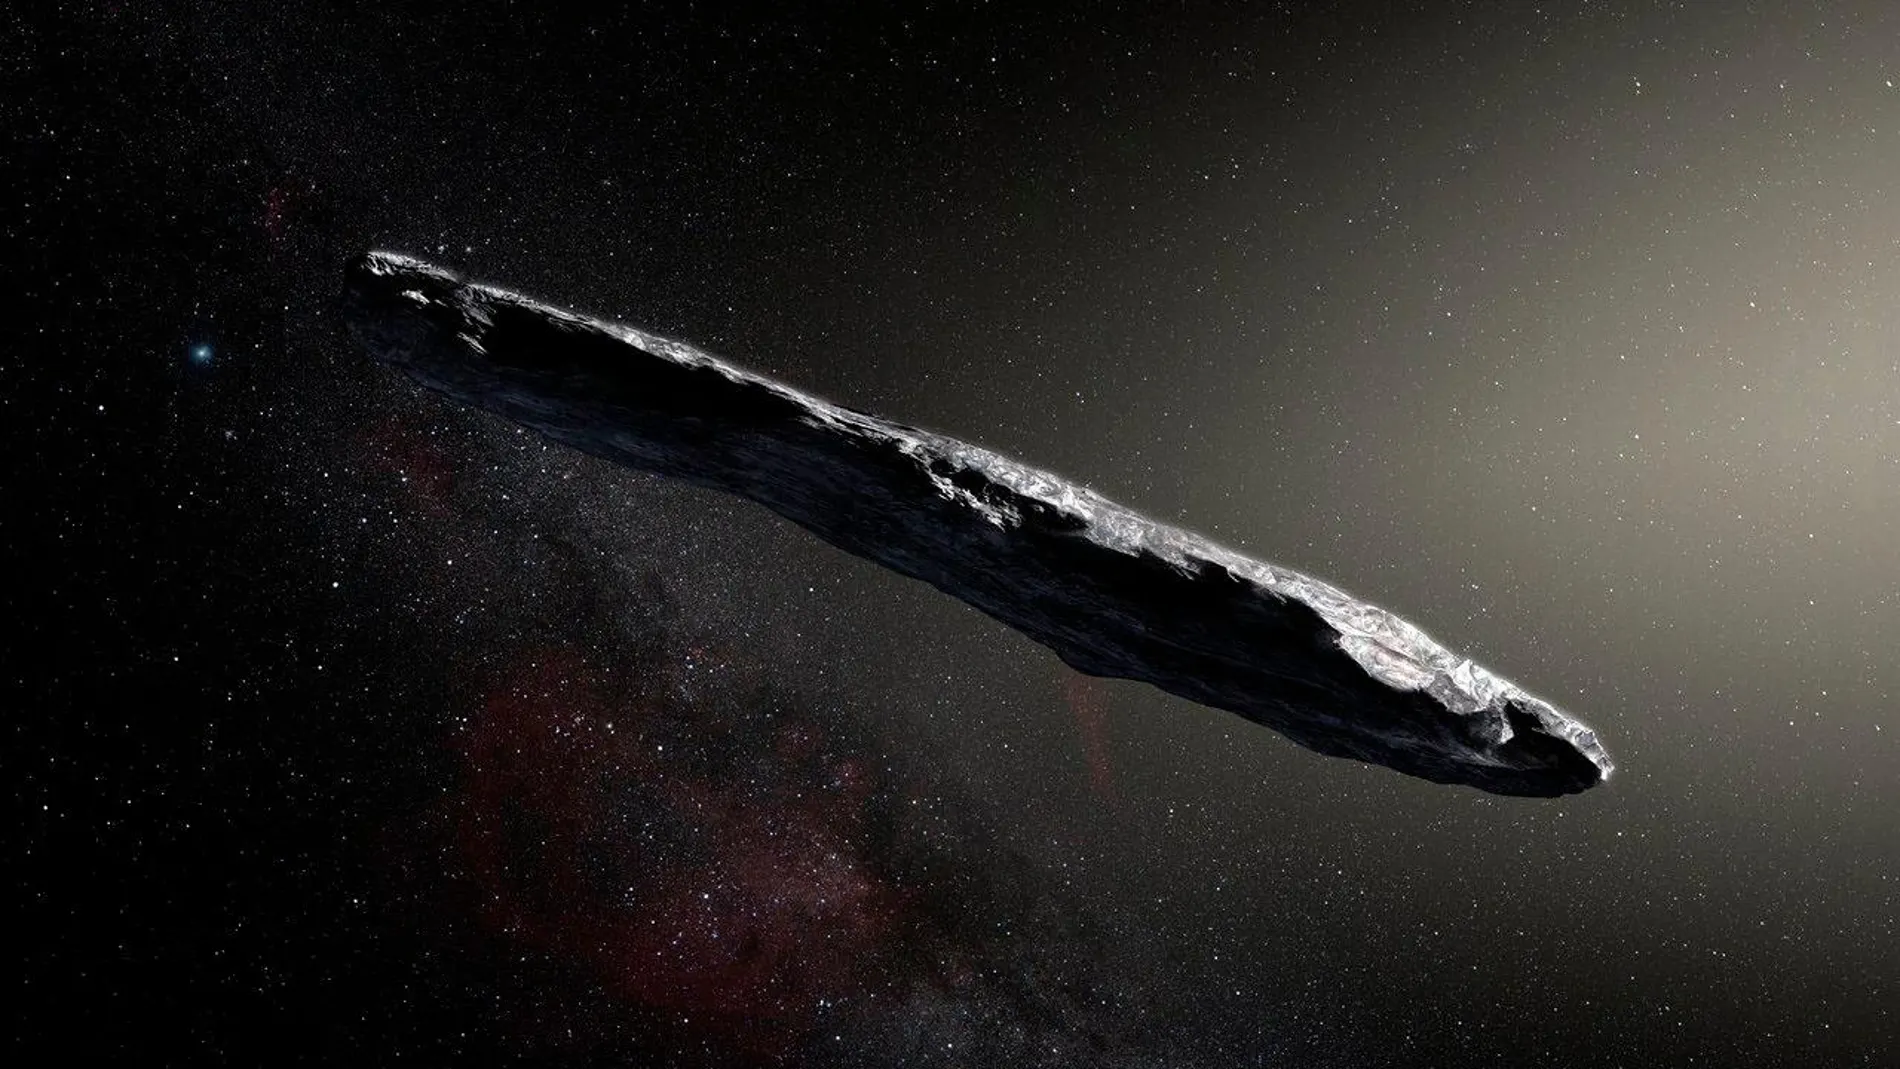 Simulación artística del objeto interestelar Oumuamua descubierto el 19 de octubre de 2017